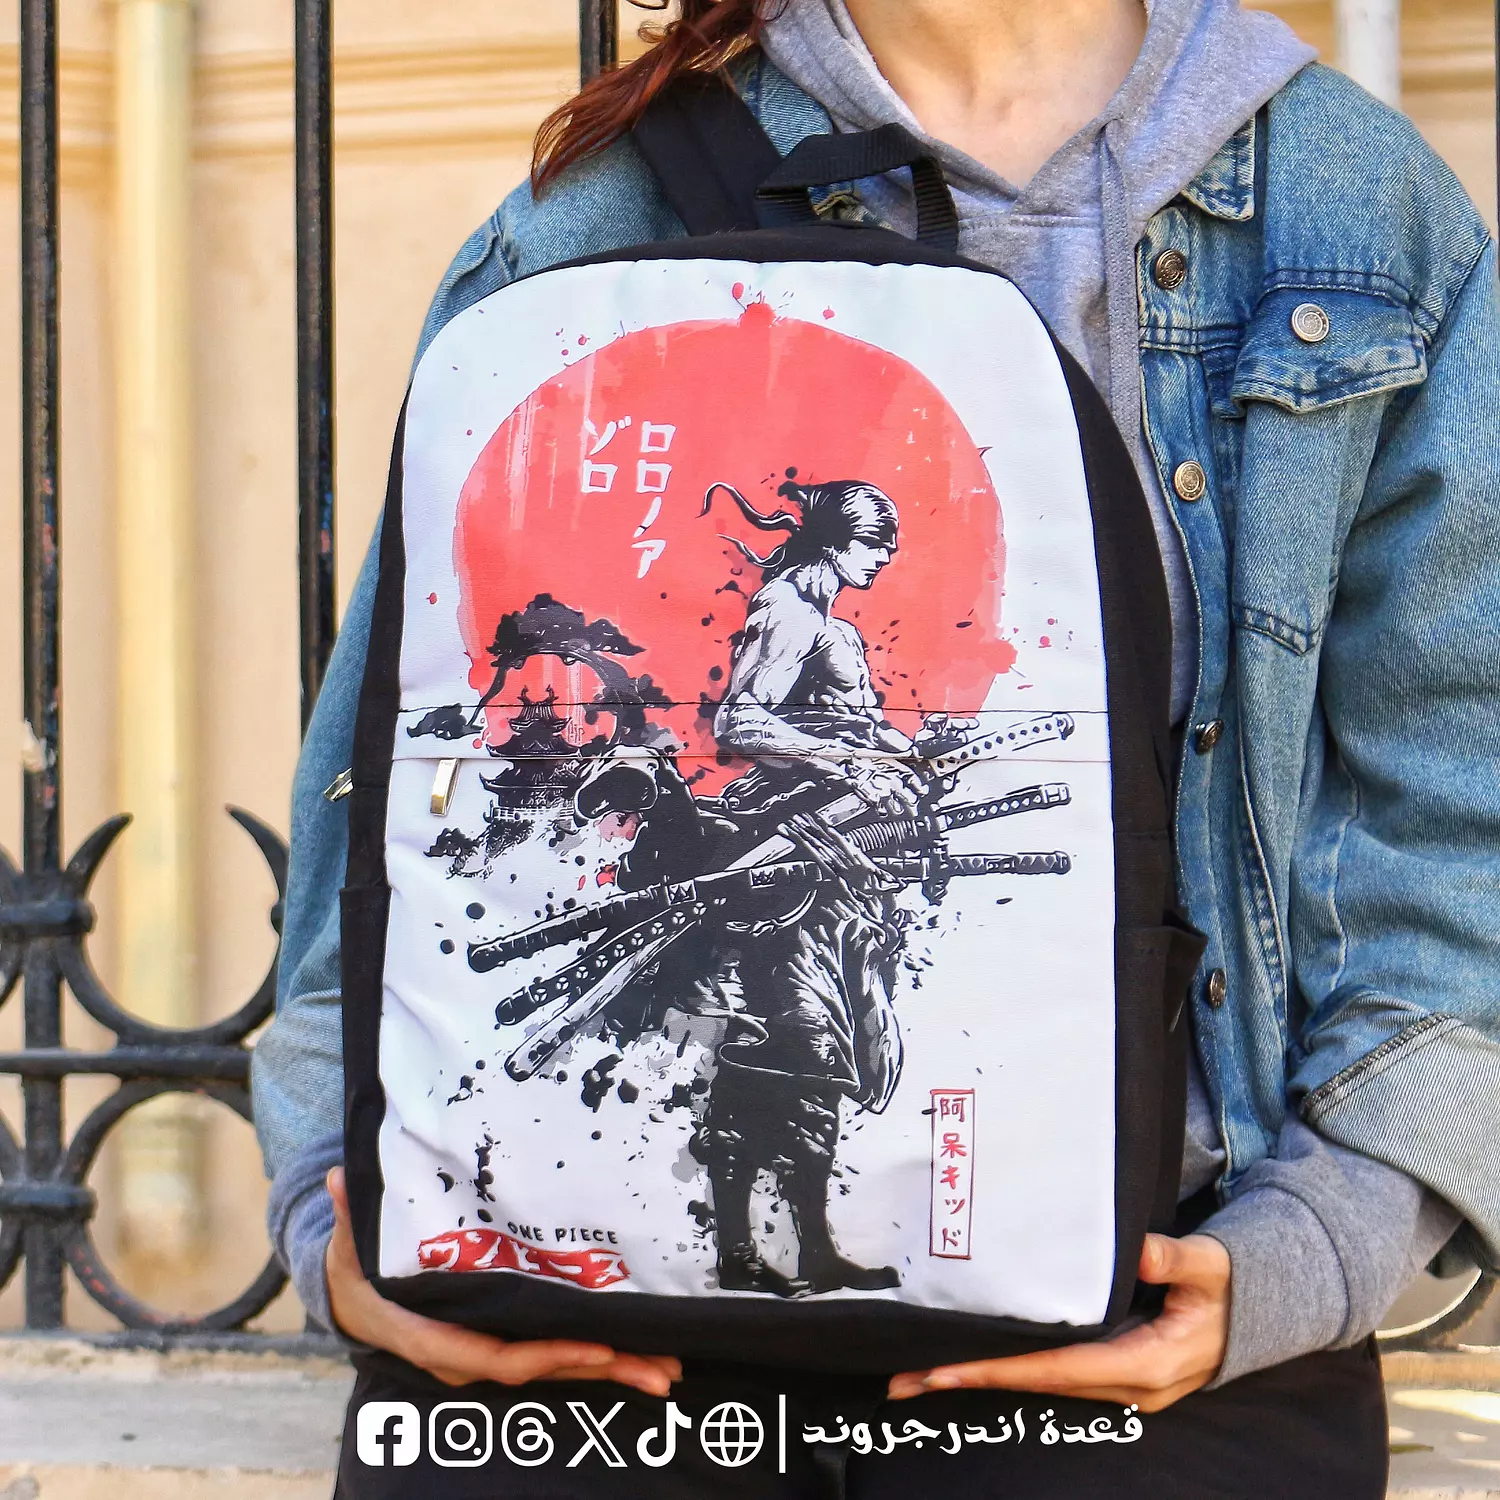 Zoro Samurai Backpack 🎒 0